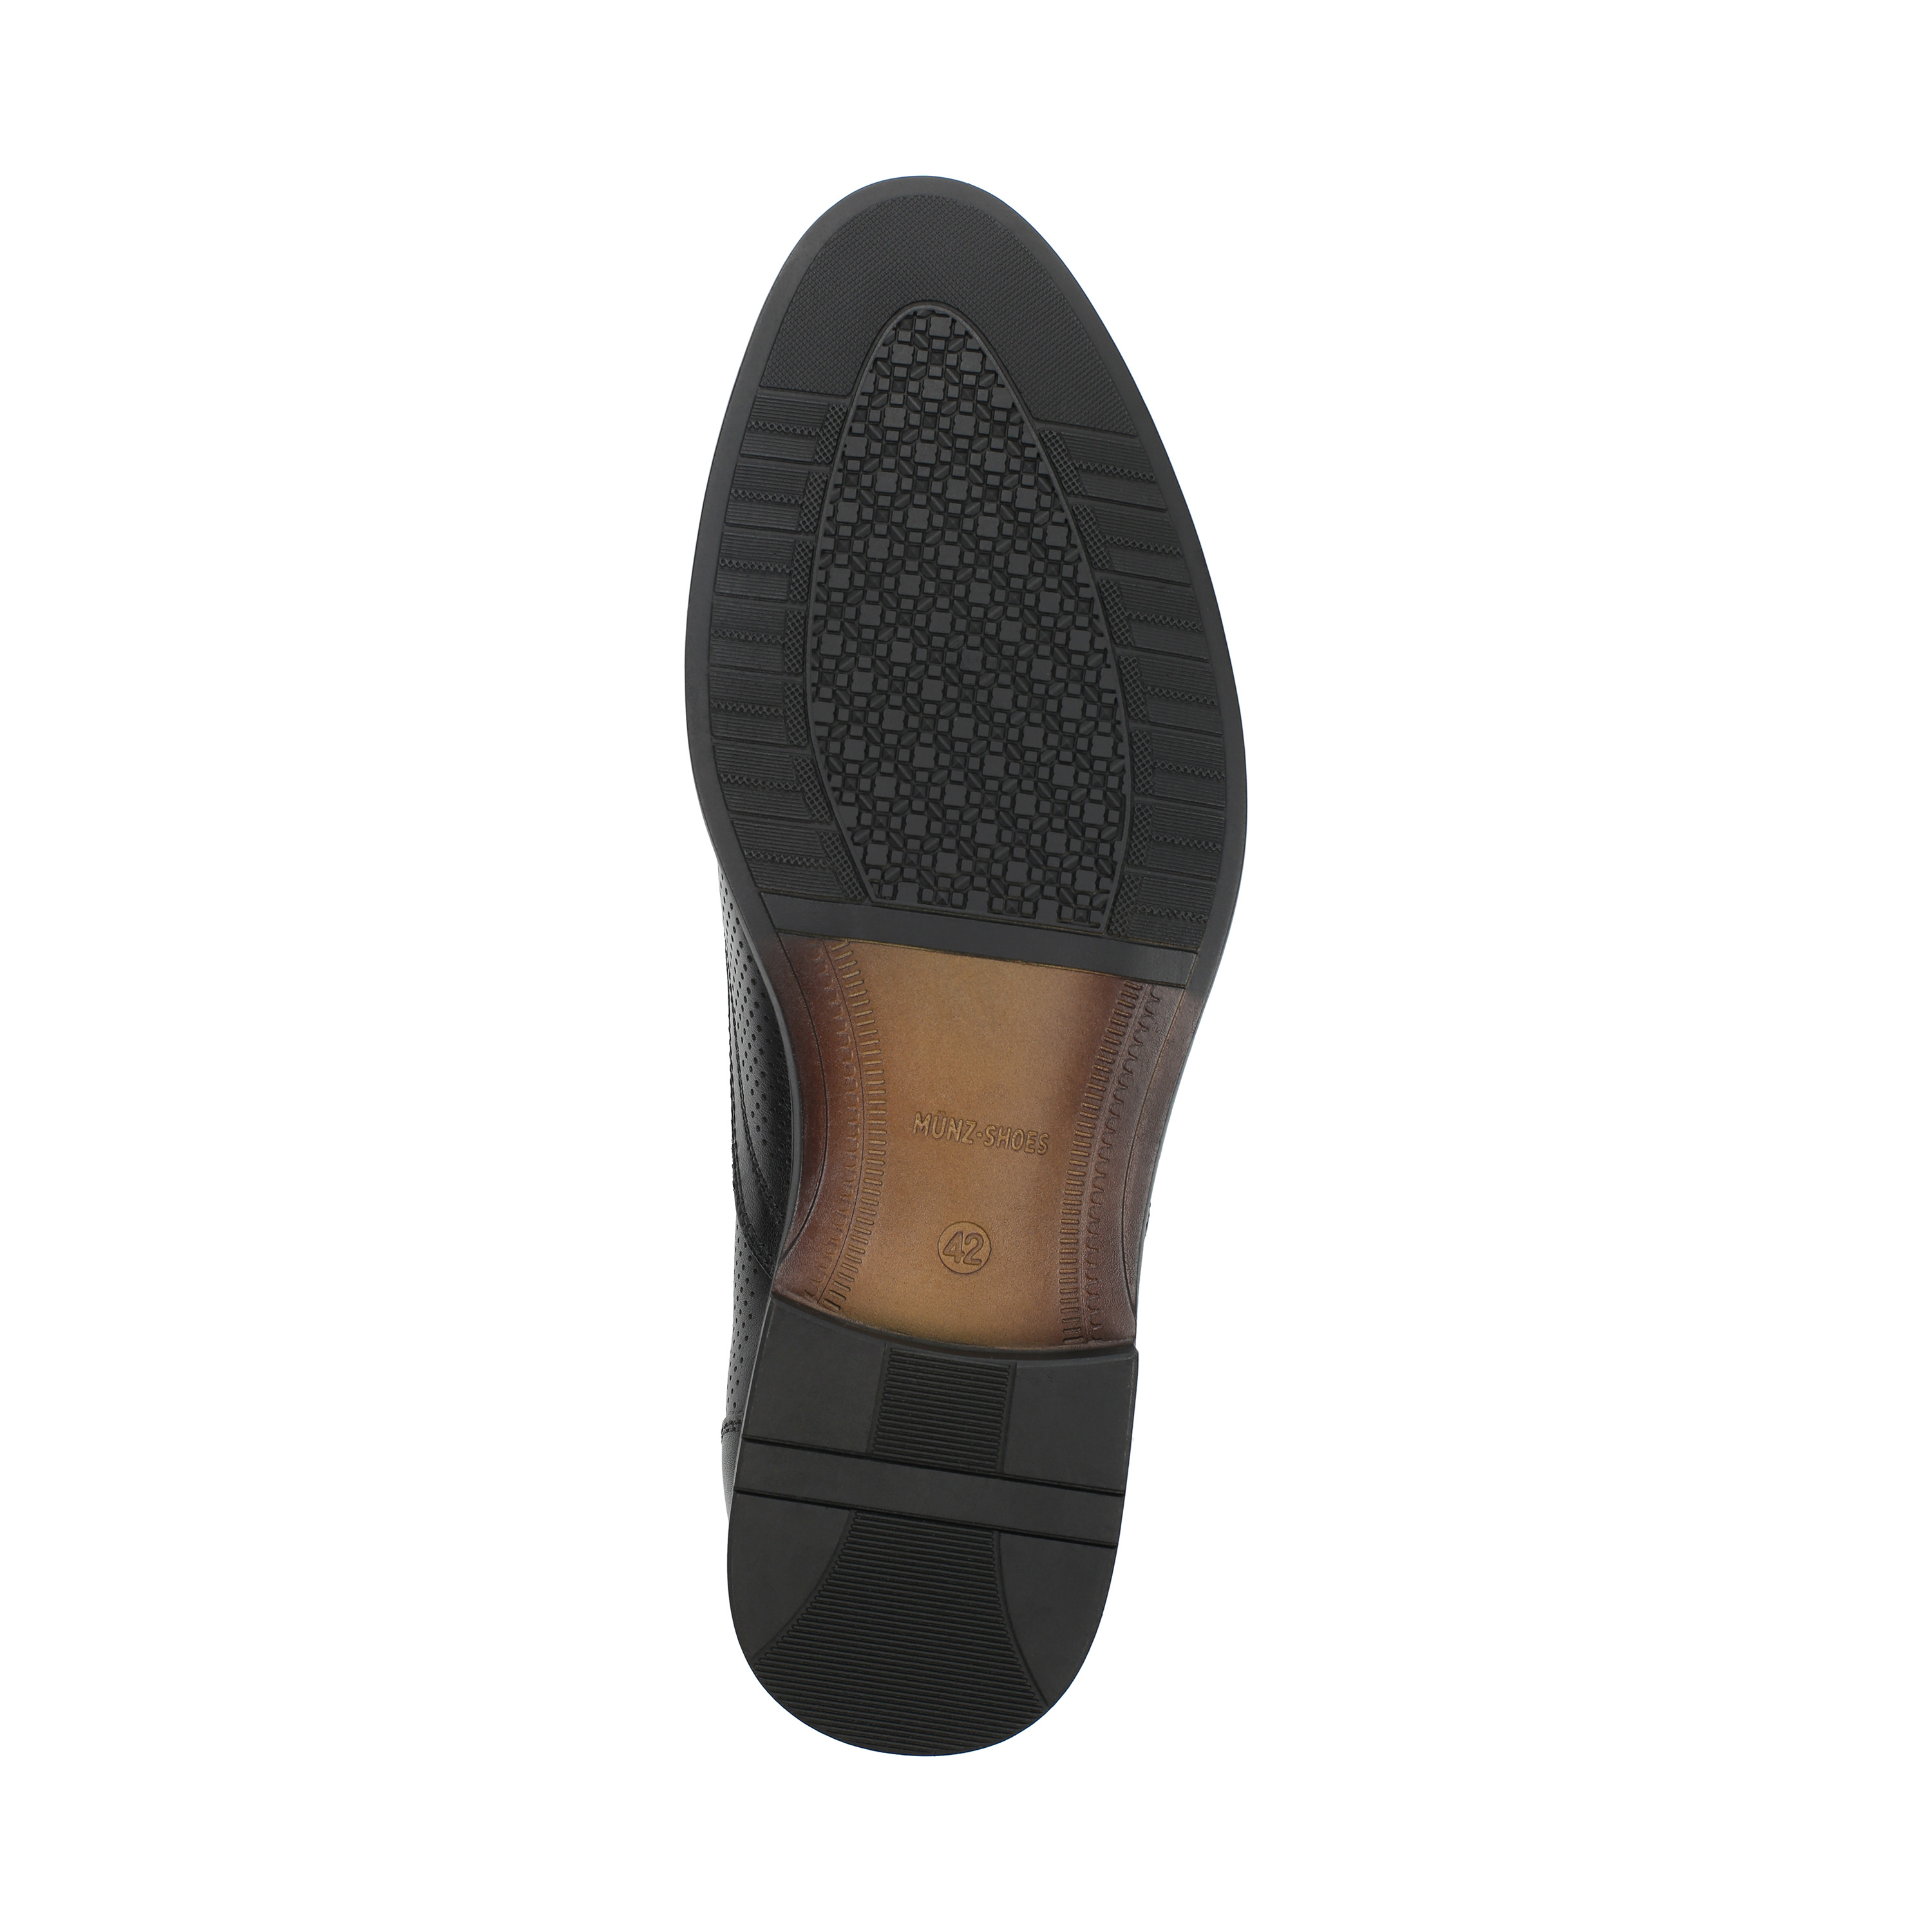 Полуботинки MUNZ Shoes 058-101B-1121 058-101B-1121, цвет черный, размер 40 туфли - фото 4